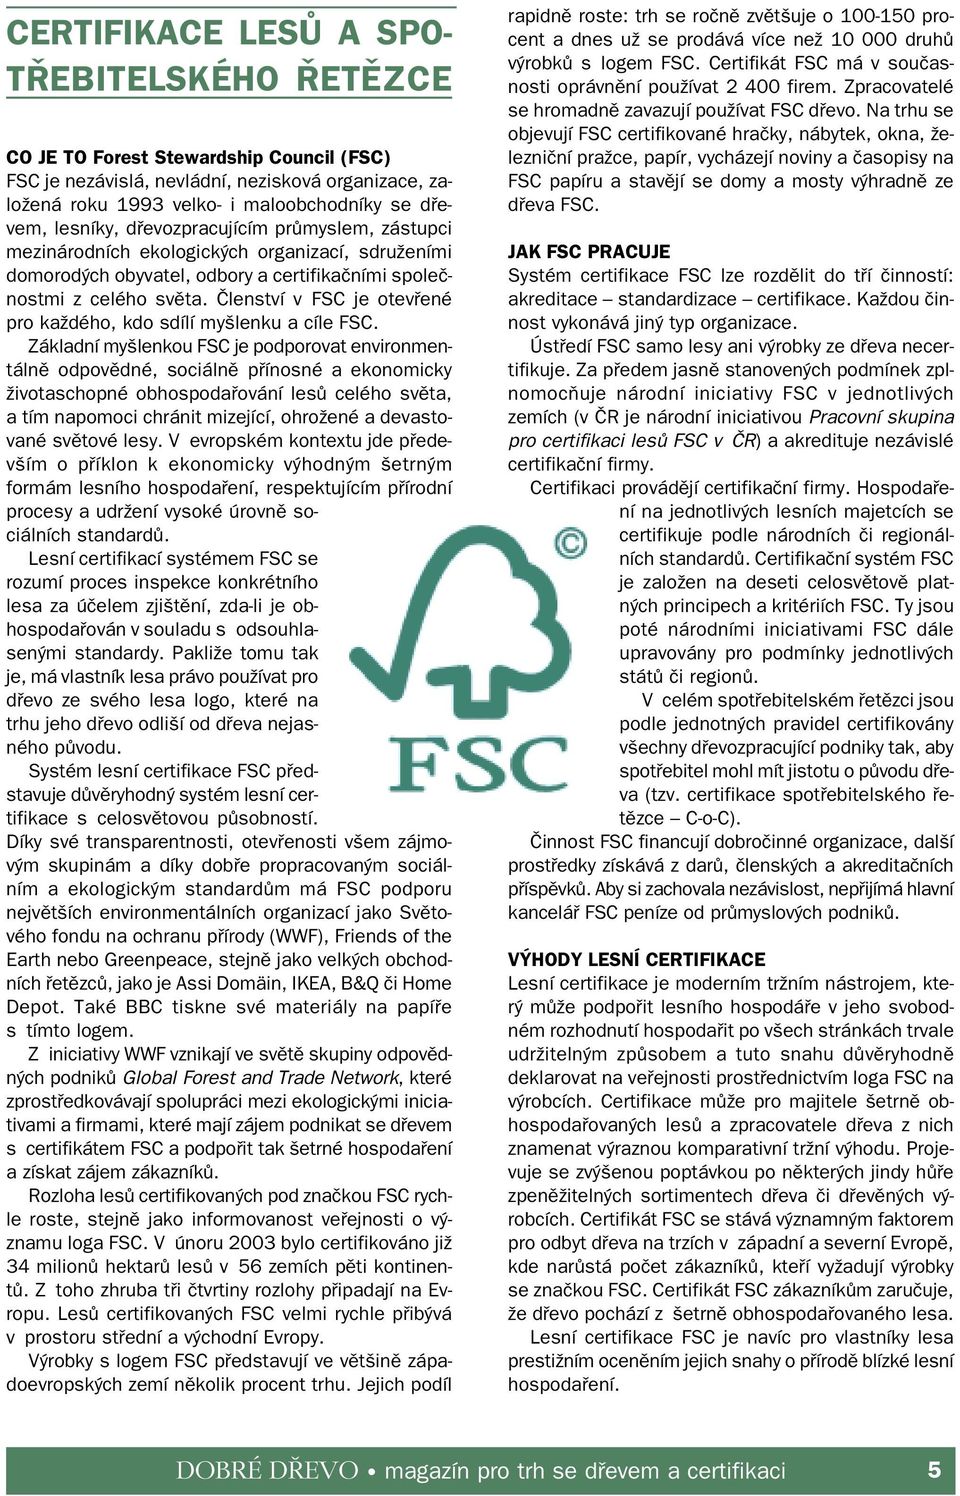 Členství v FSC je otevřené pro každého, kdo sdílí myšlenku a cíle FSC.